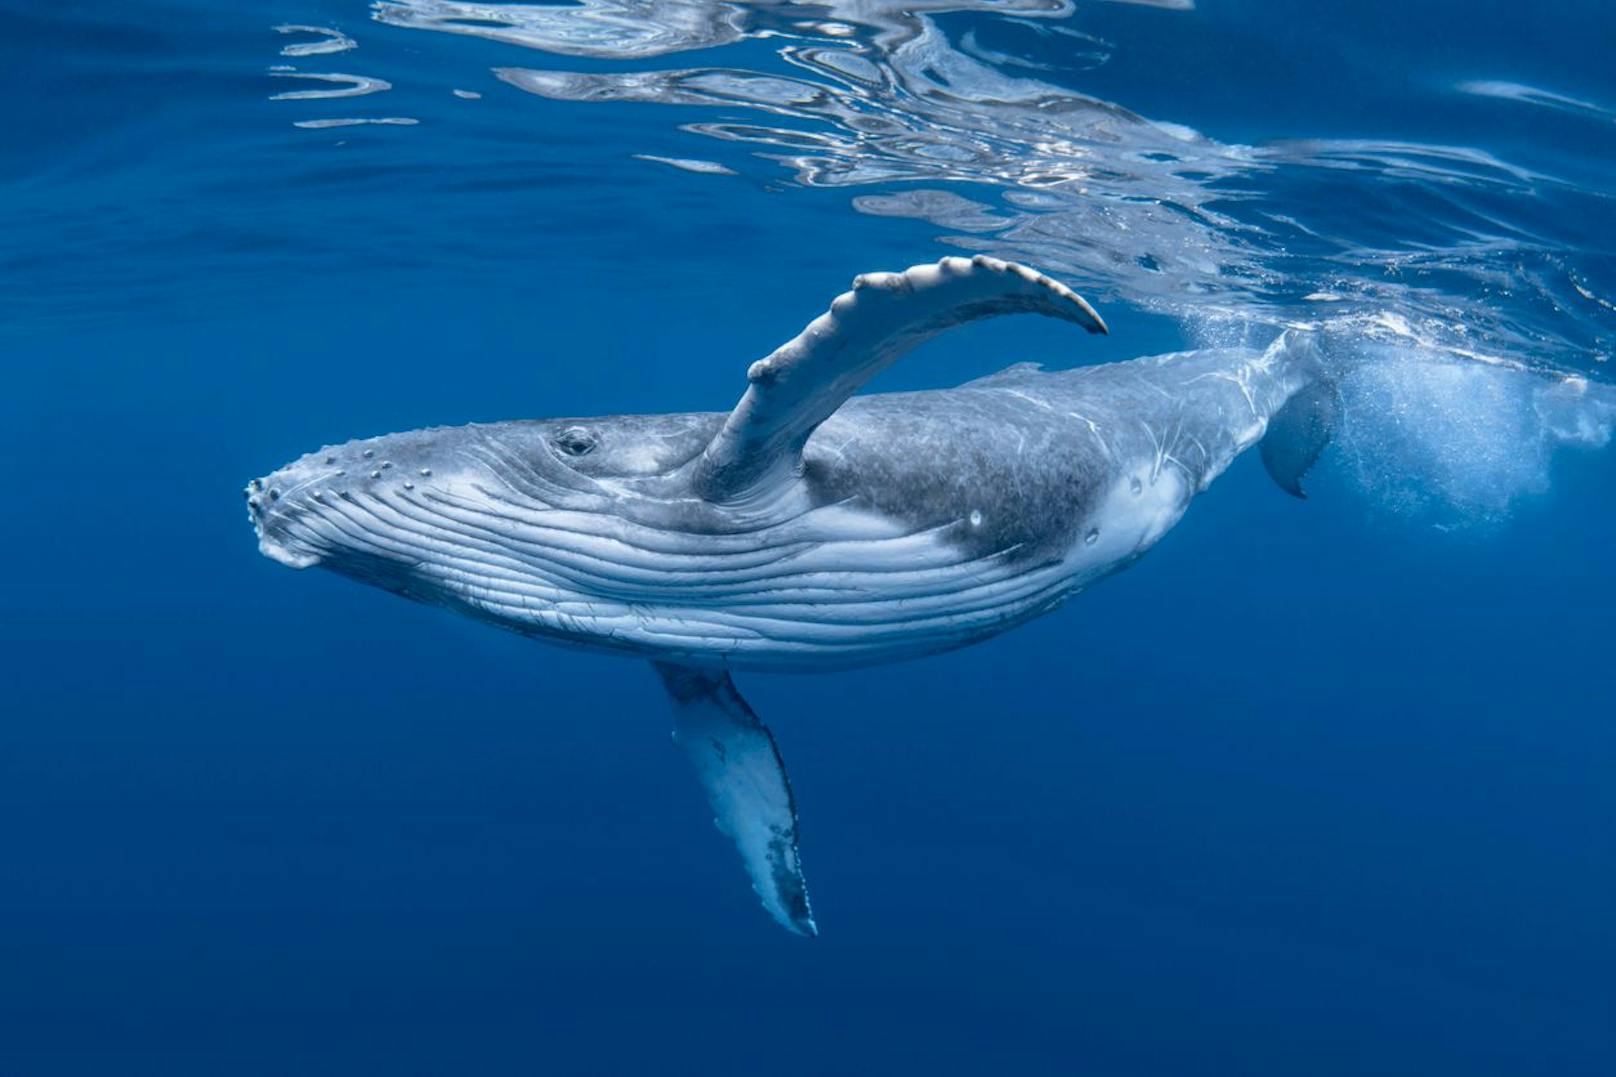 <strong>GEWINNER 2022:</strong> Die Buckelwale in Australien konnten 2022 von der dortigen Liste der bedrohten Arten gestrichen werden. Ihre Zahl ist in australischen Gewässern von ehemals 1.500 auf 40.000 bis 65.000 gestiegen. HURRA!&nbsp;